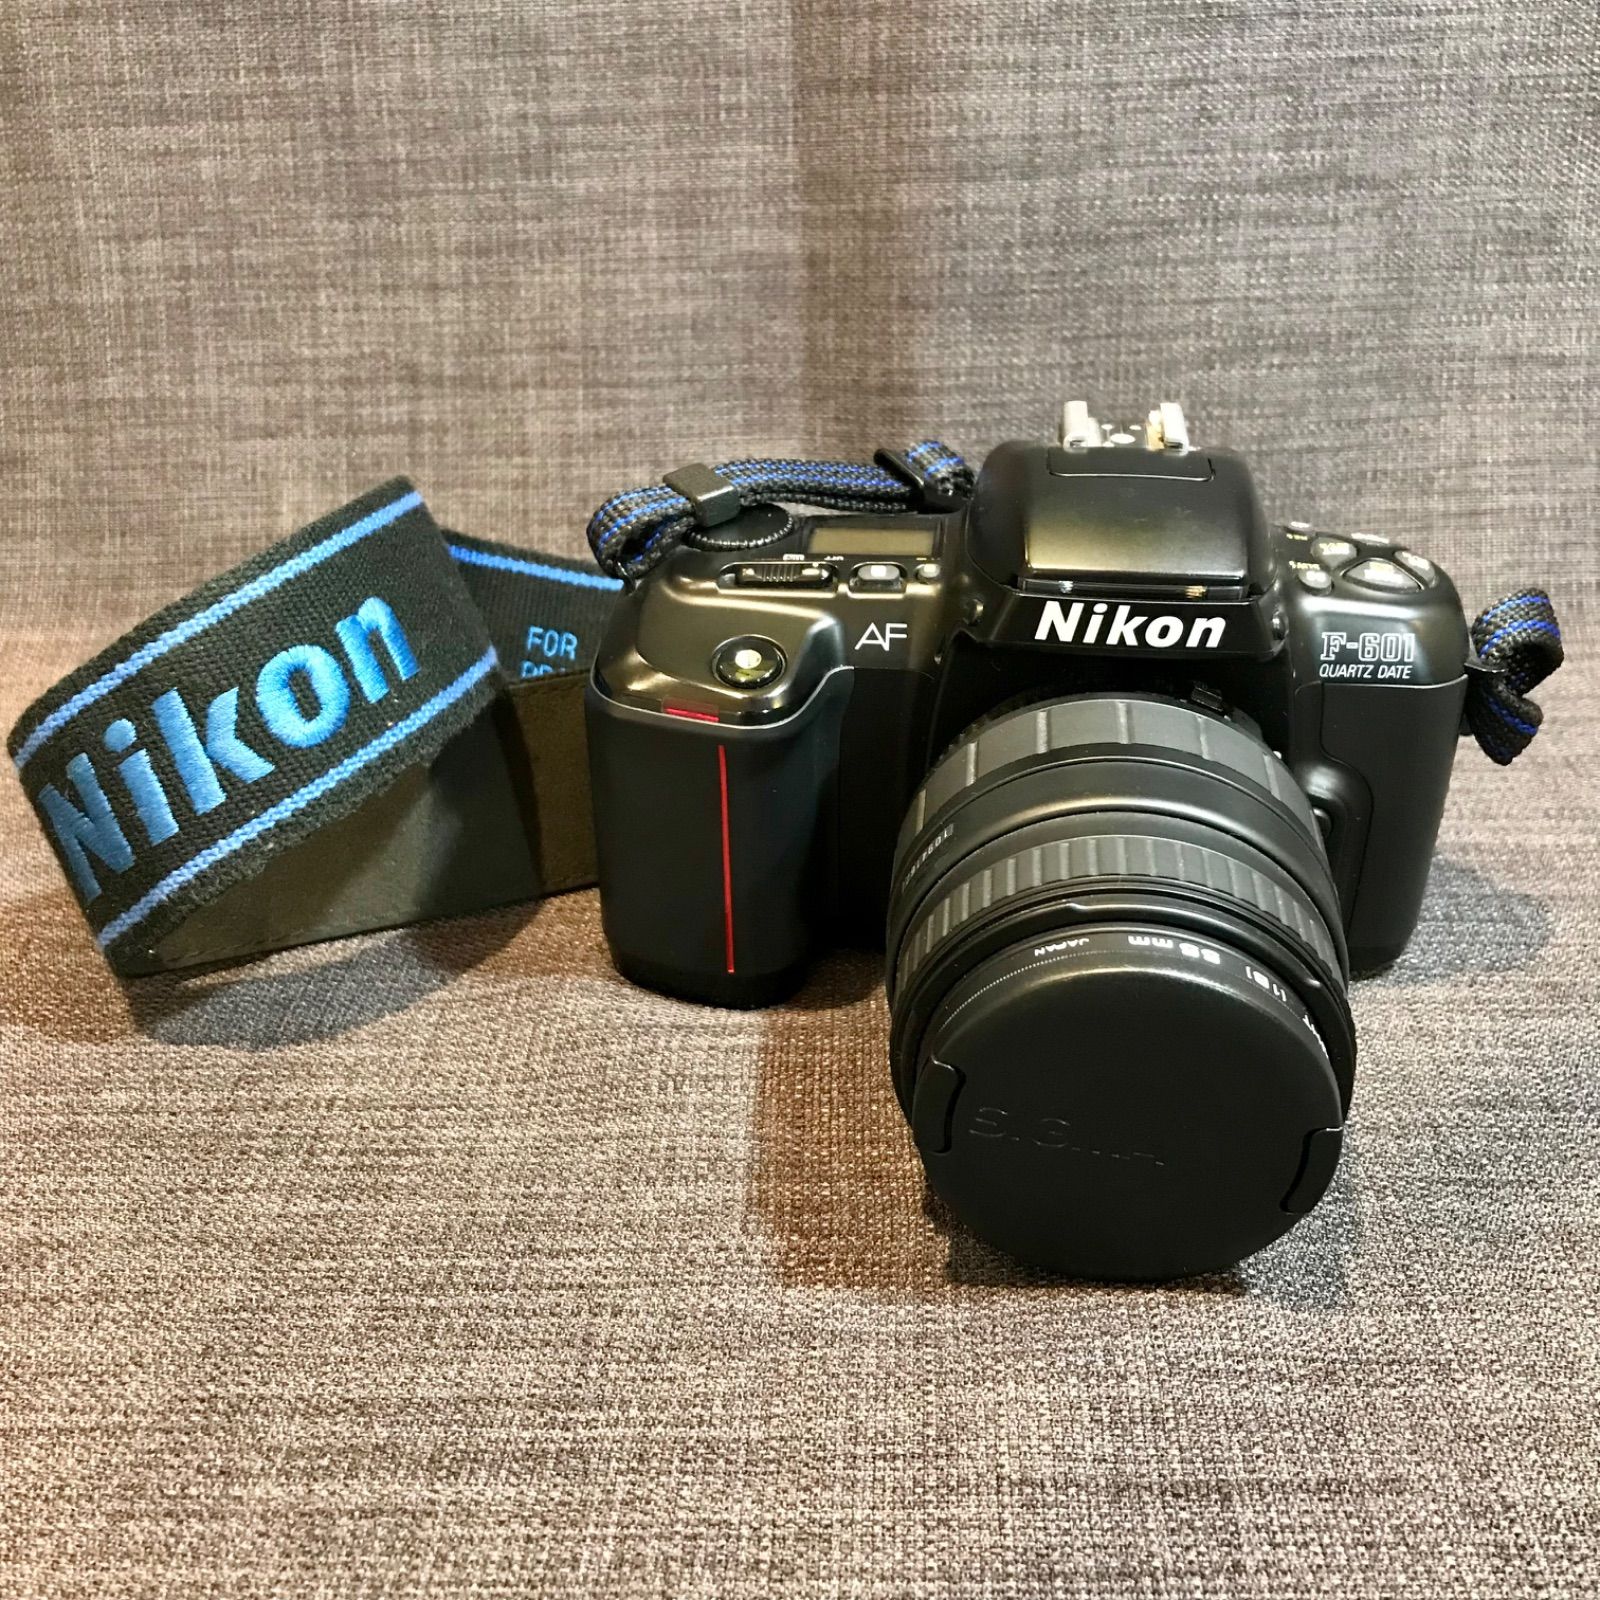 NIKON デジカメ ジャンク品 - デジタルカメラ